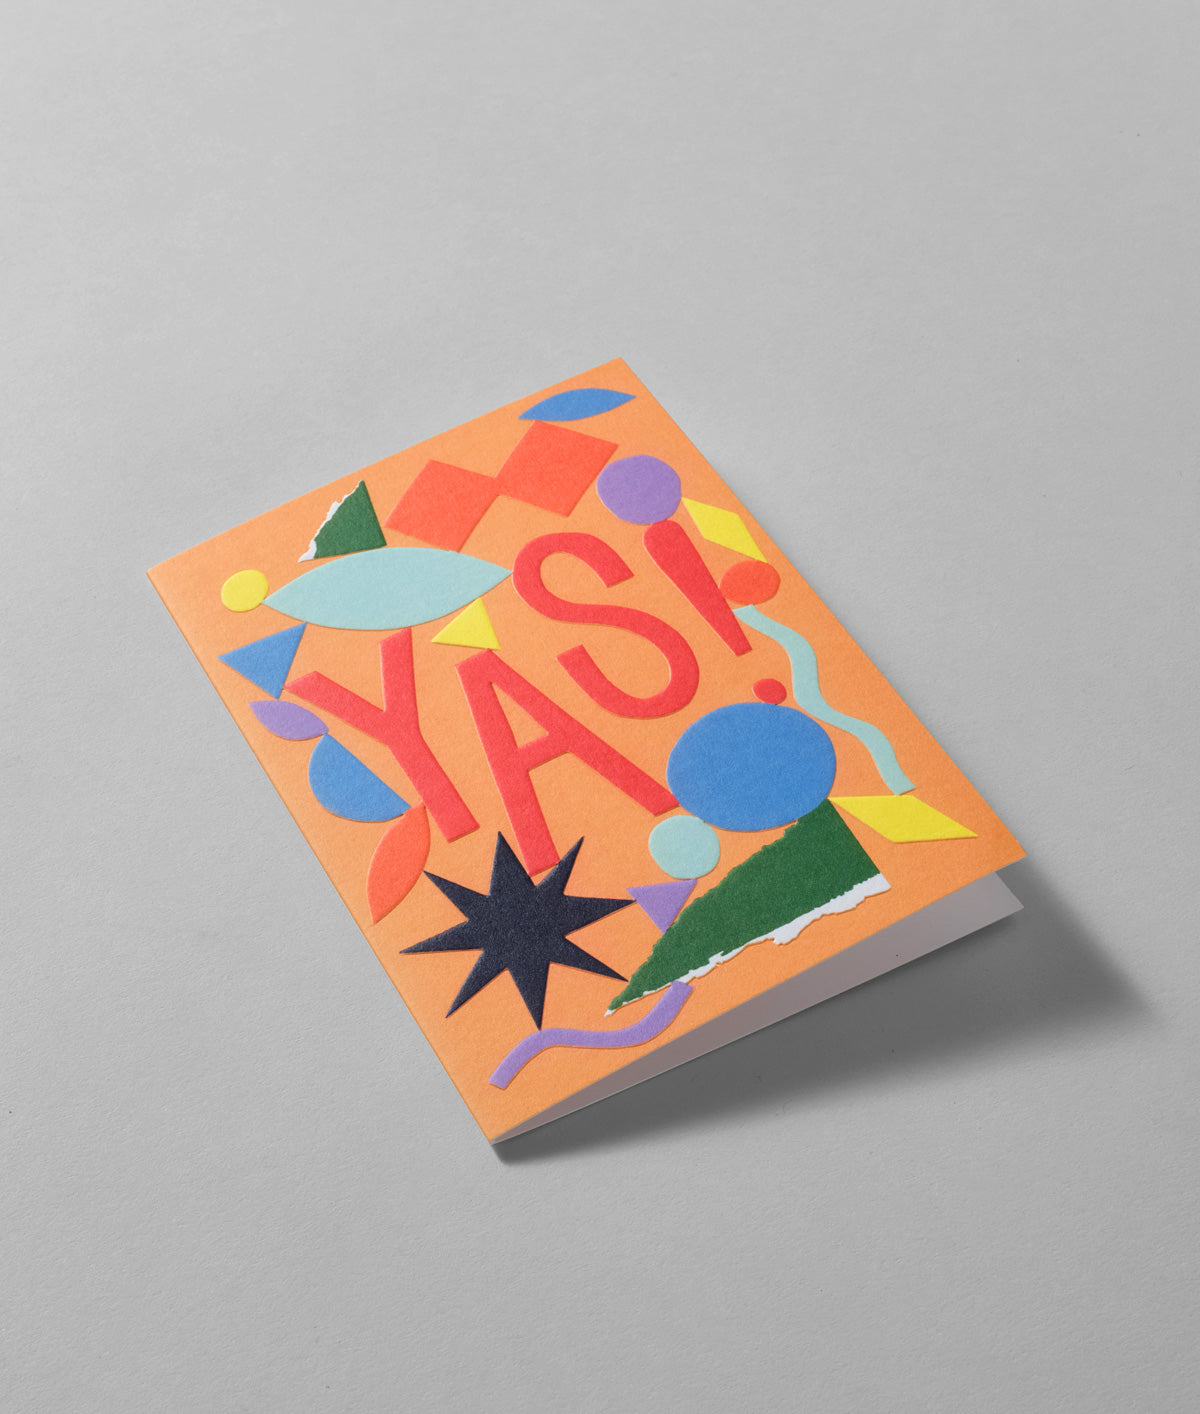 Yas Embossed Greetings Card